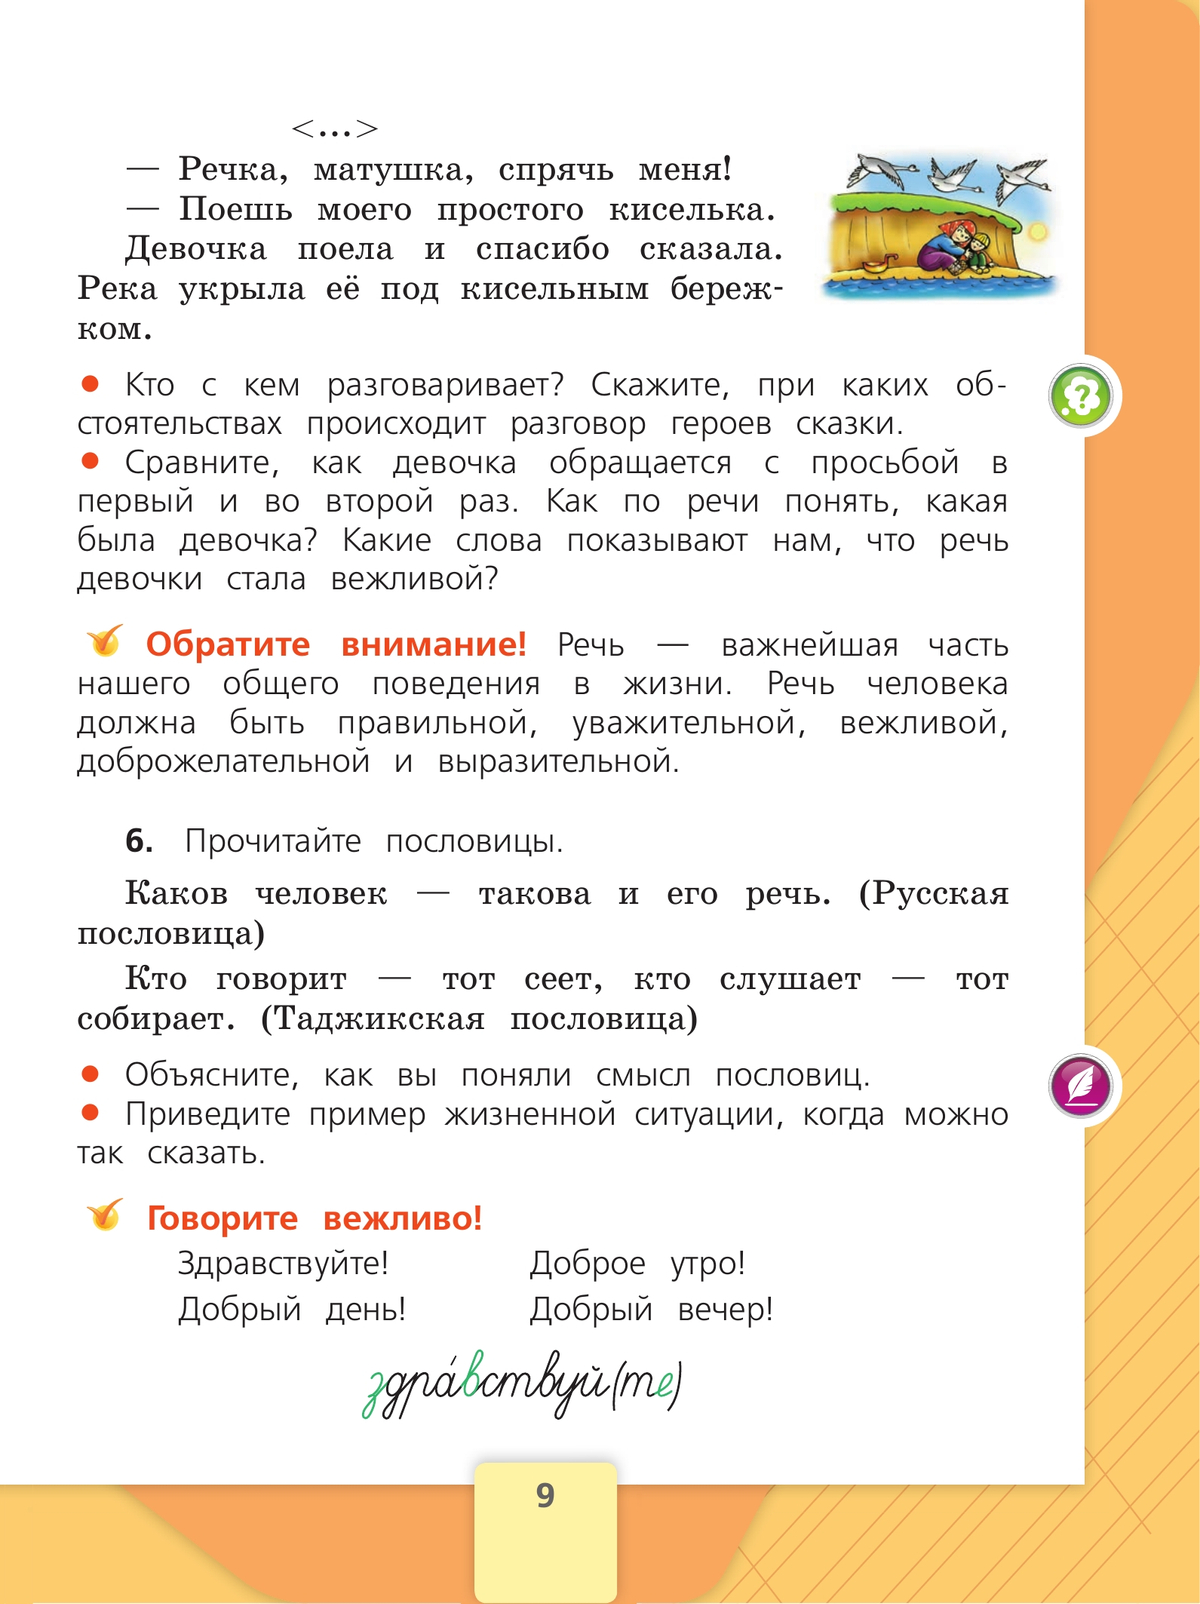 Русский язык. 2 класс. Учебник. В 2 ч. Часть 1 11